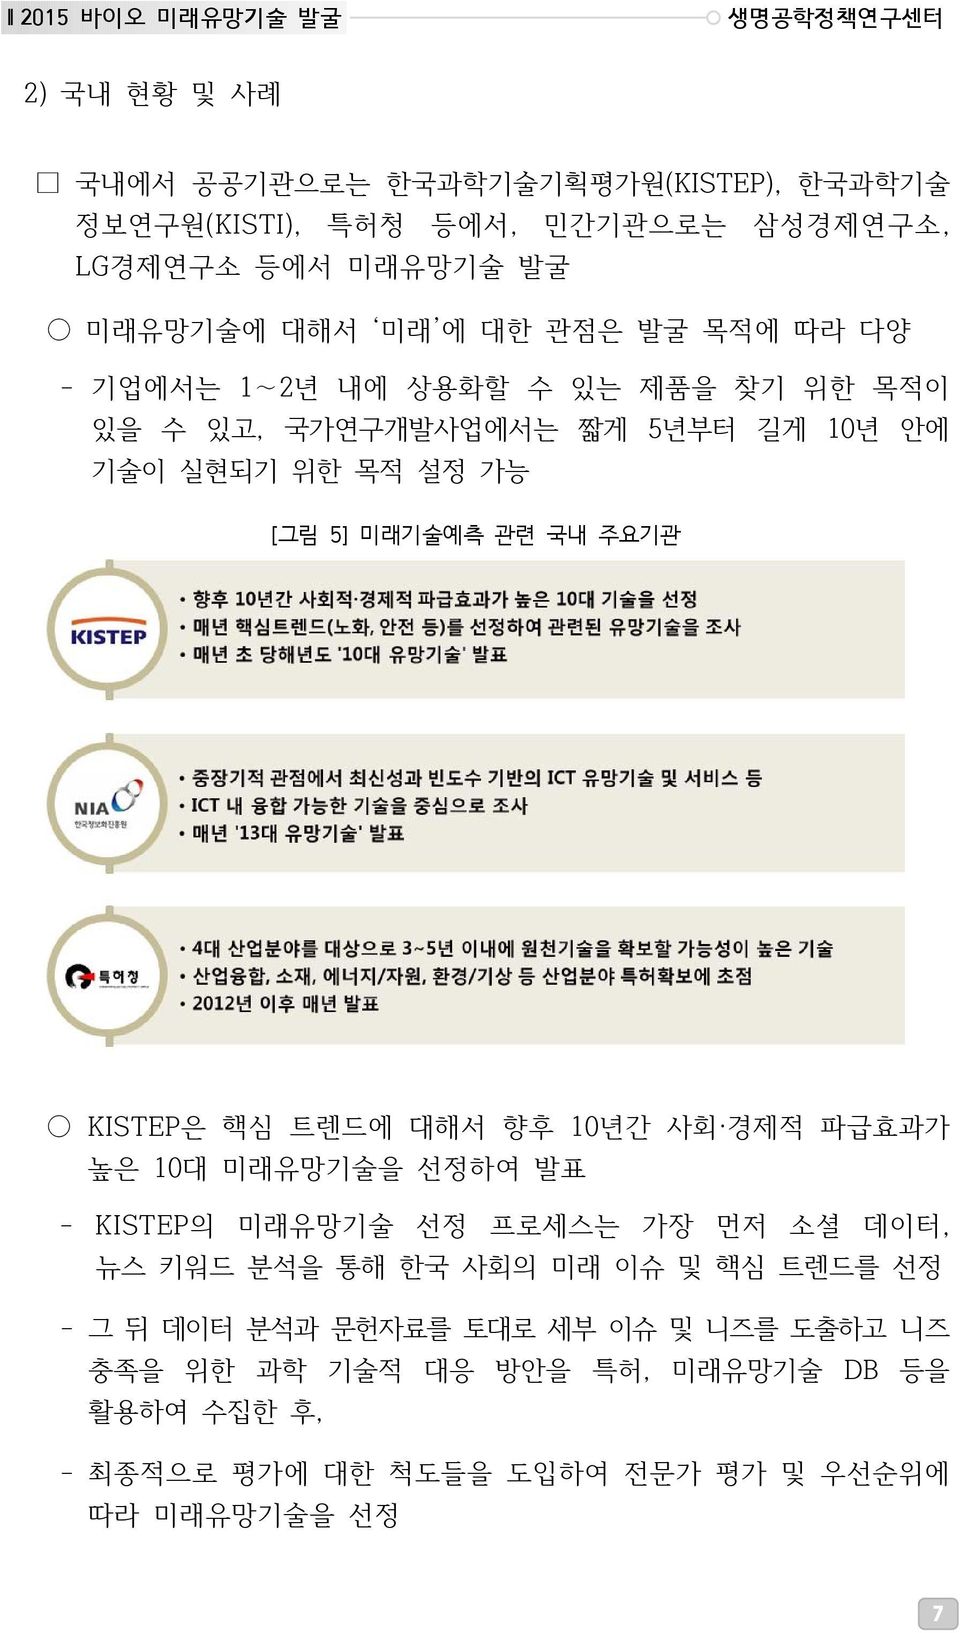 관련 국내 주요기관 KISTEP은 핵심 트렌드에 대해서 향후 10년간 사회 경제적 파급효과가 높은 10대 미래유망기술을 선정하여 발표 - KISTEP의 미래유망기술 선정 프로세스는 가장 먼저 소셜 데이터, 뉴스 키워드 분석을 통해 한국 사회의 미래 이슈 및 핵심